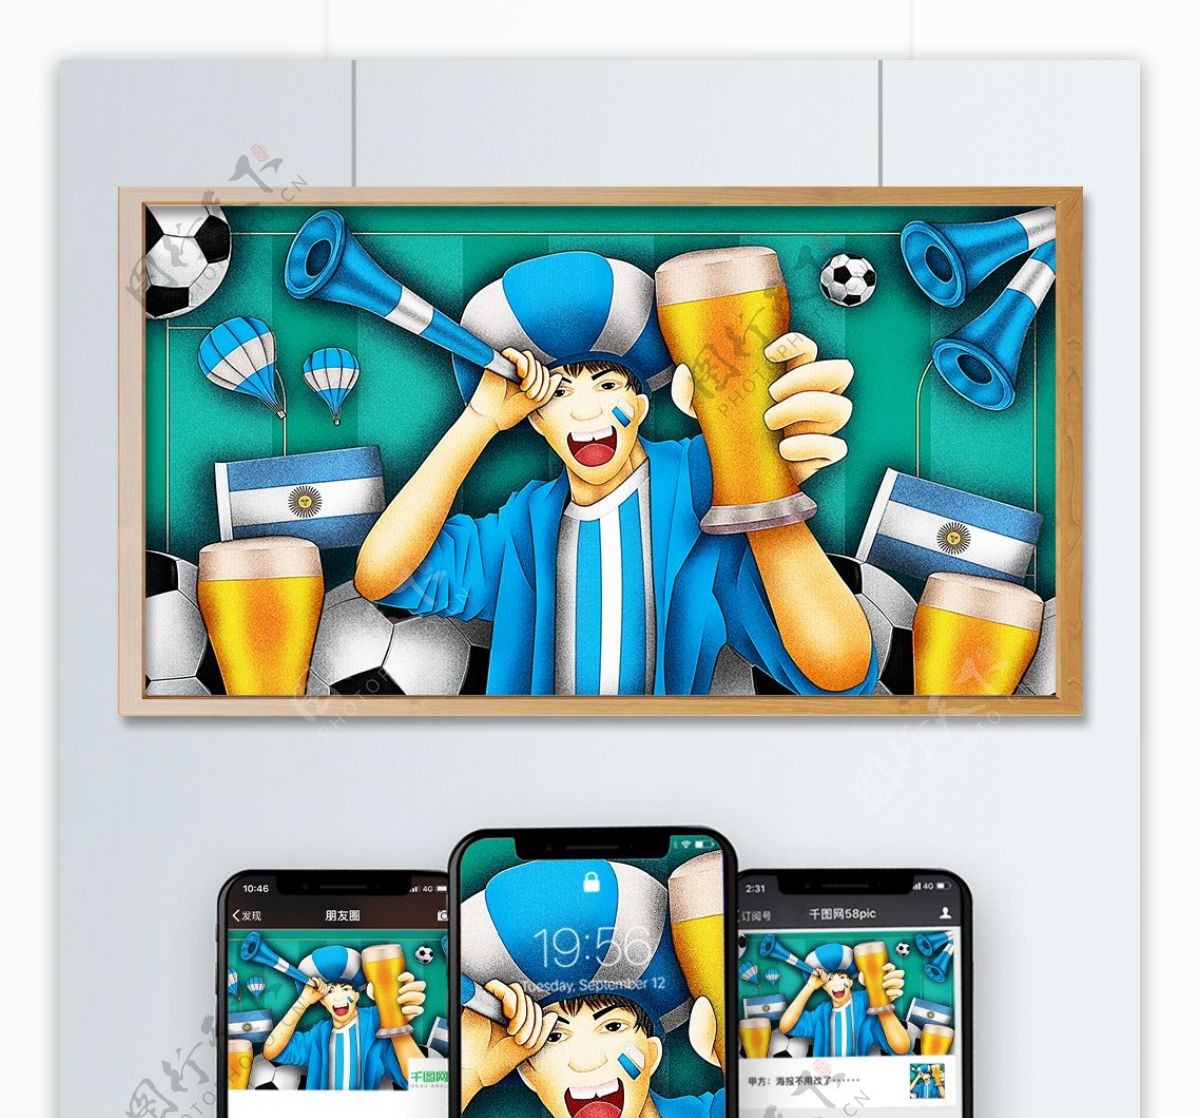 清新世界杯足球啤酒节阿根廷队球迷原创插画